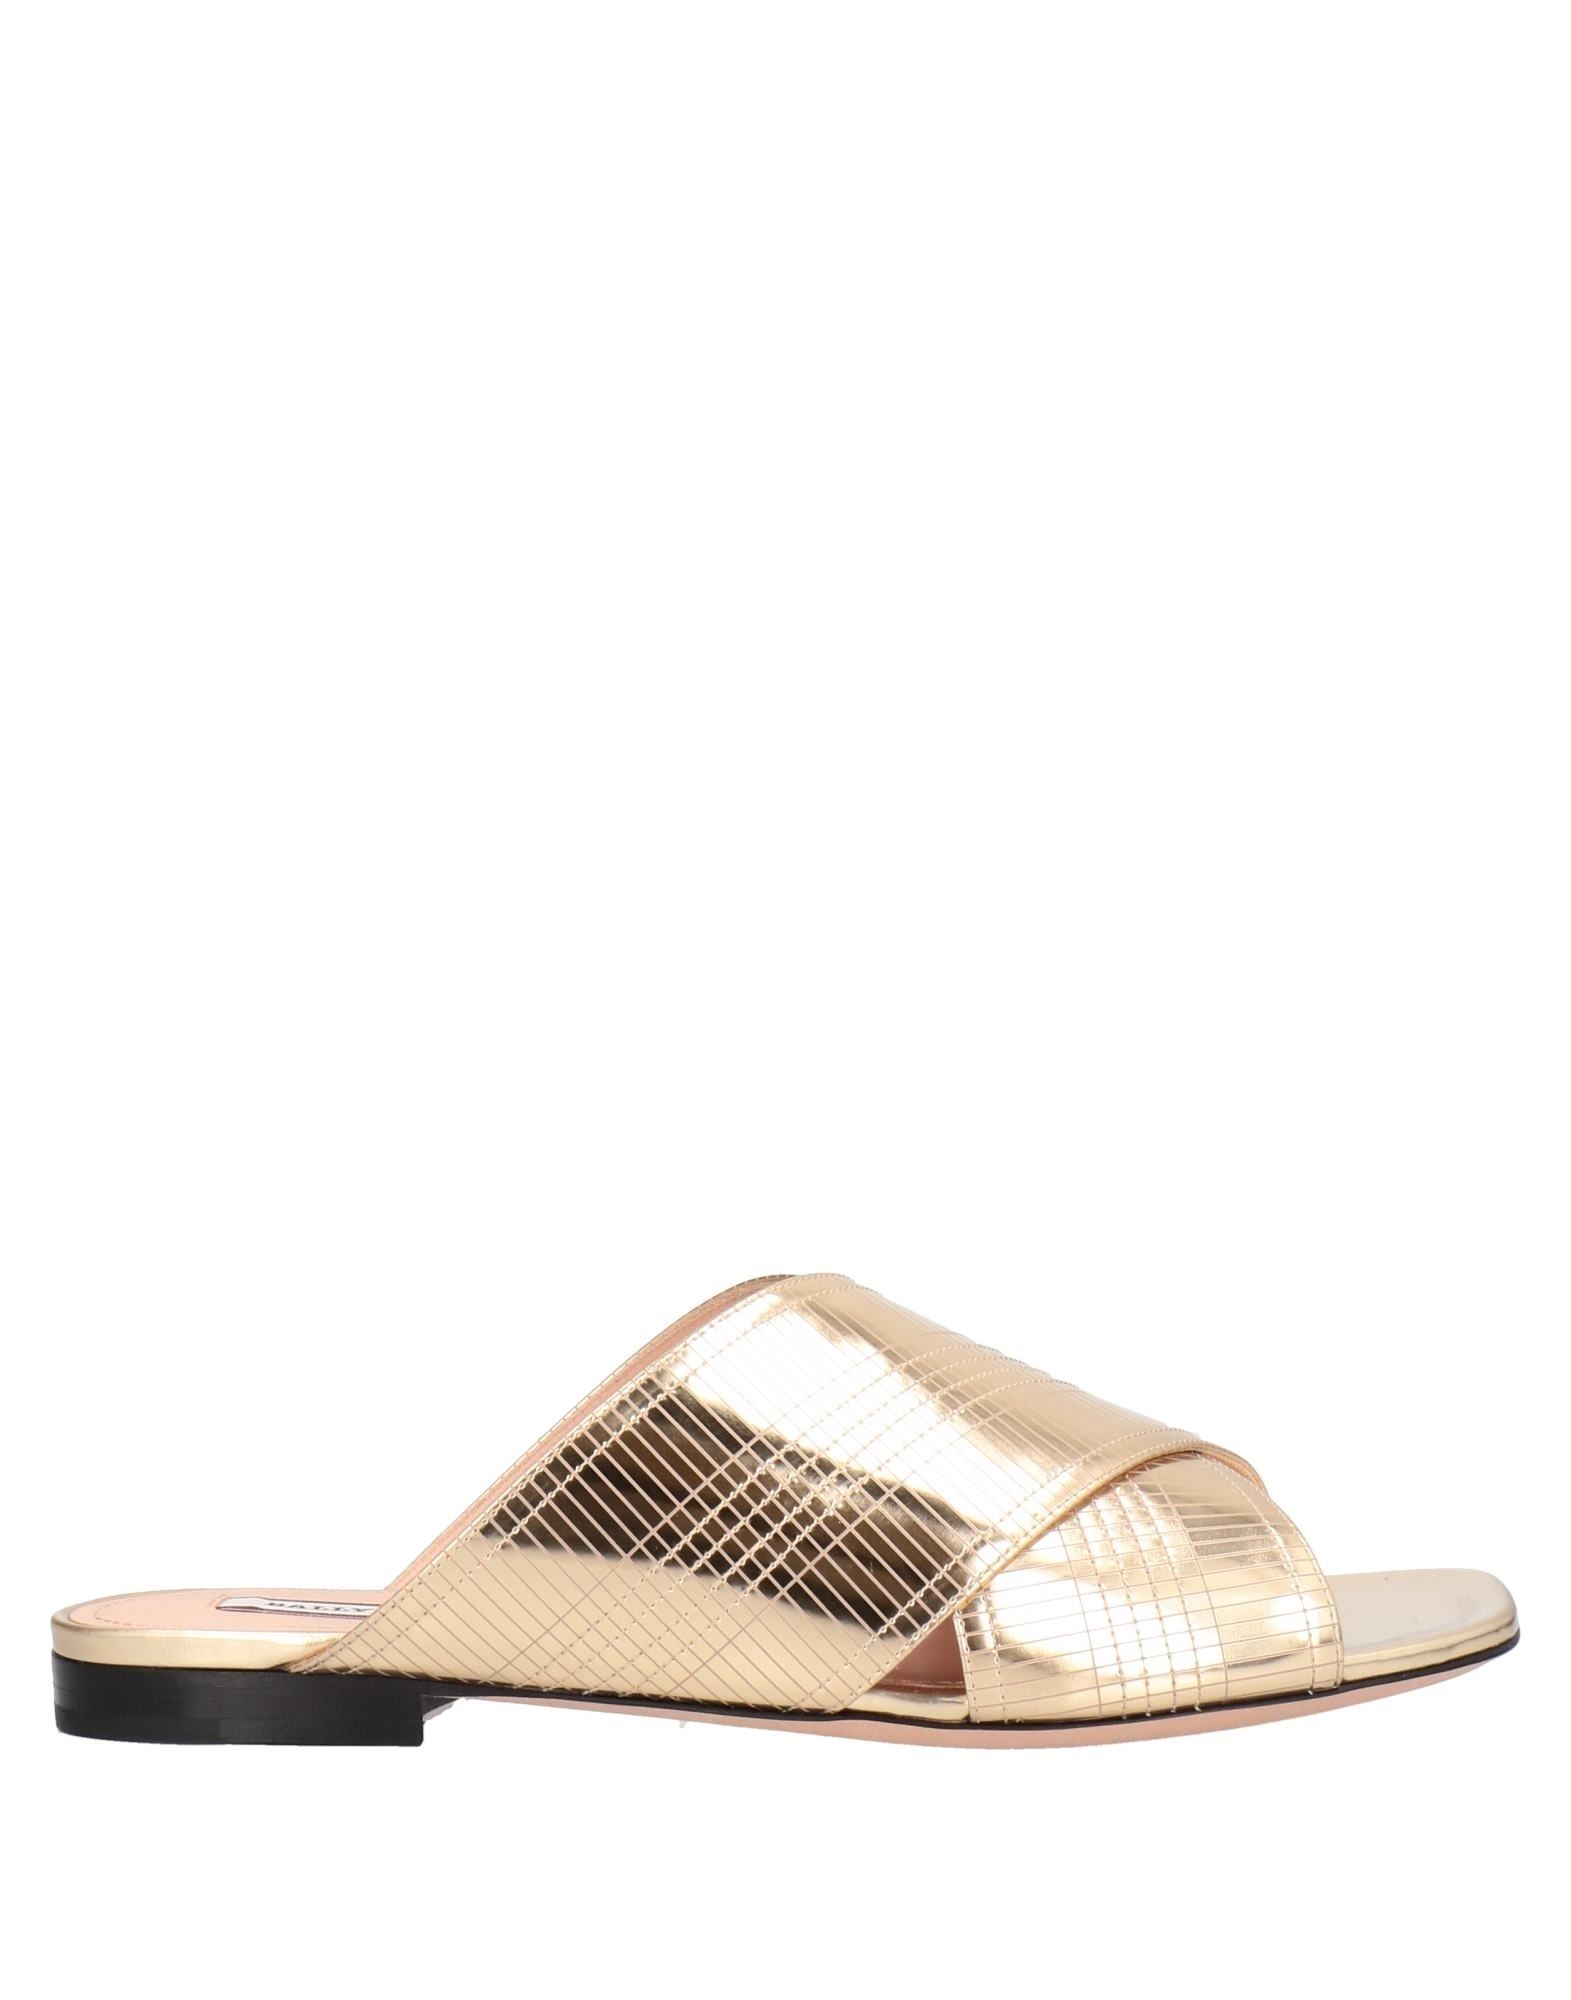 Shop Bally Woman Sandals Gold Size 7 Calfskin